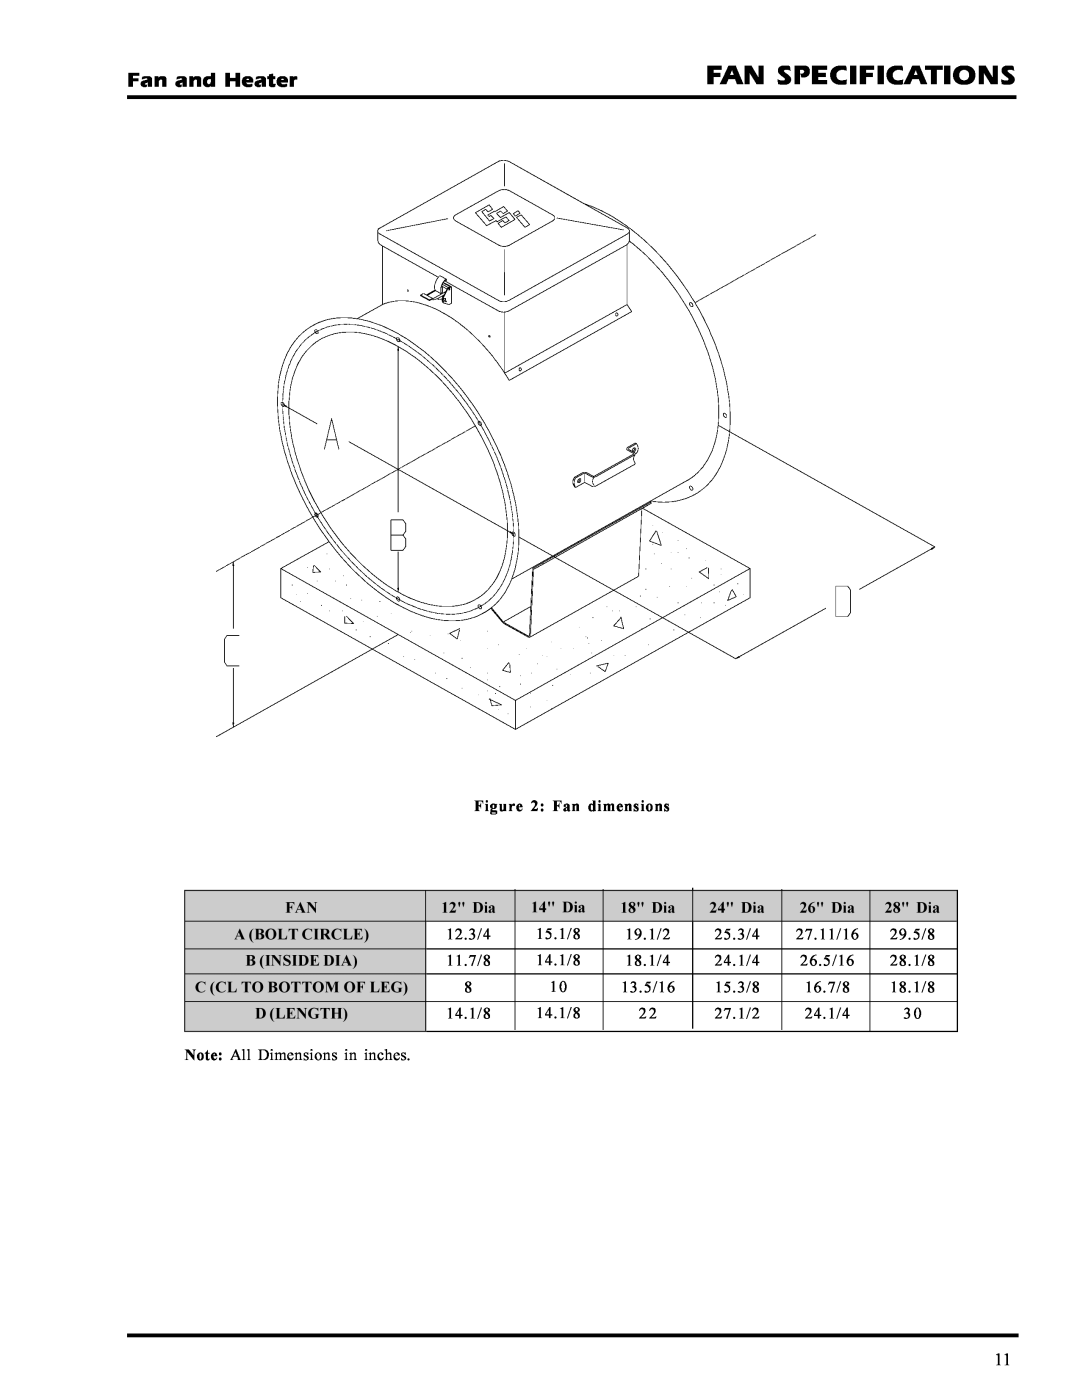 GSI Outdoors PNEG-377 service manual Fan Specifications, Fan and Heater, Fan dimensions 